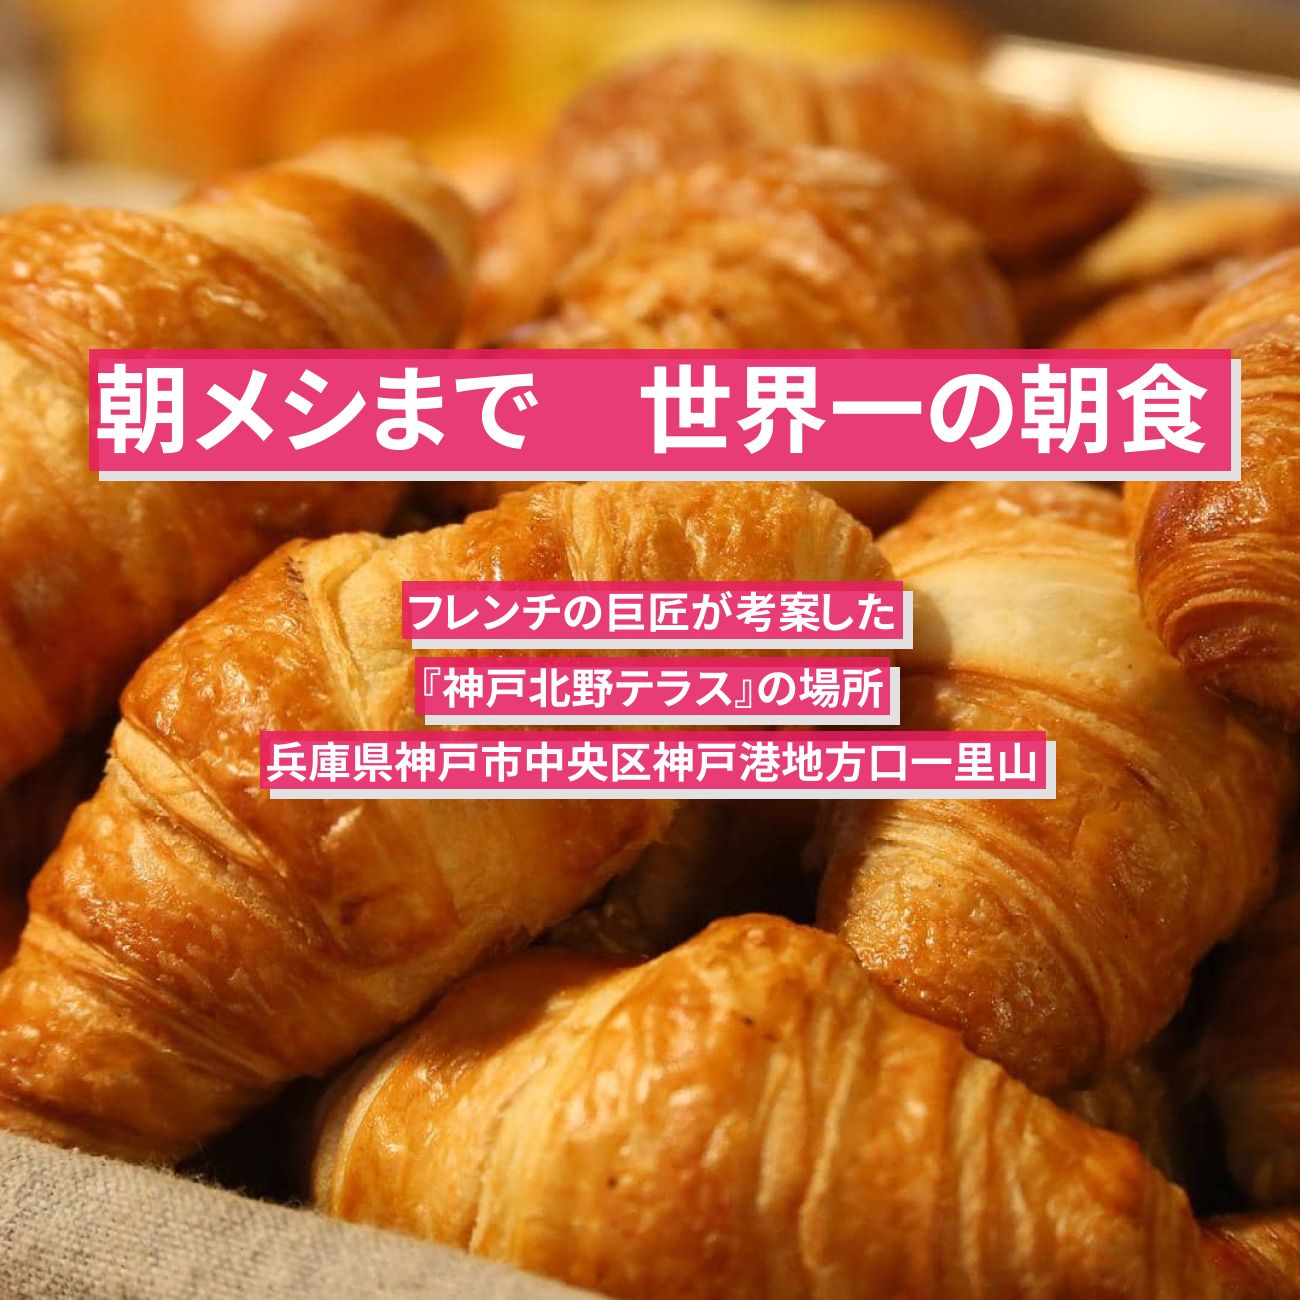 【朝メシまで】世界一の朝食(フレンチの巨匠)『神戸北野テラス』の場所